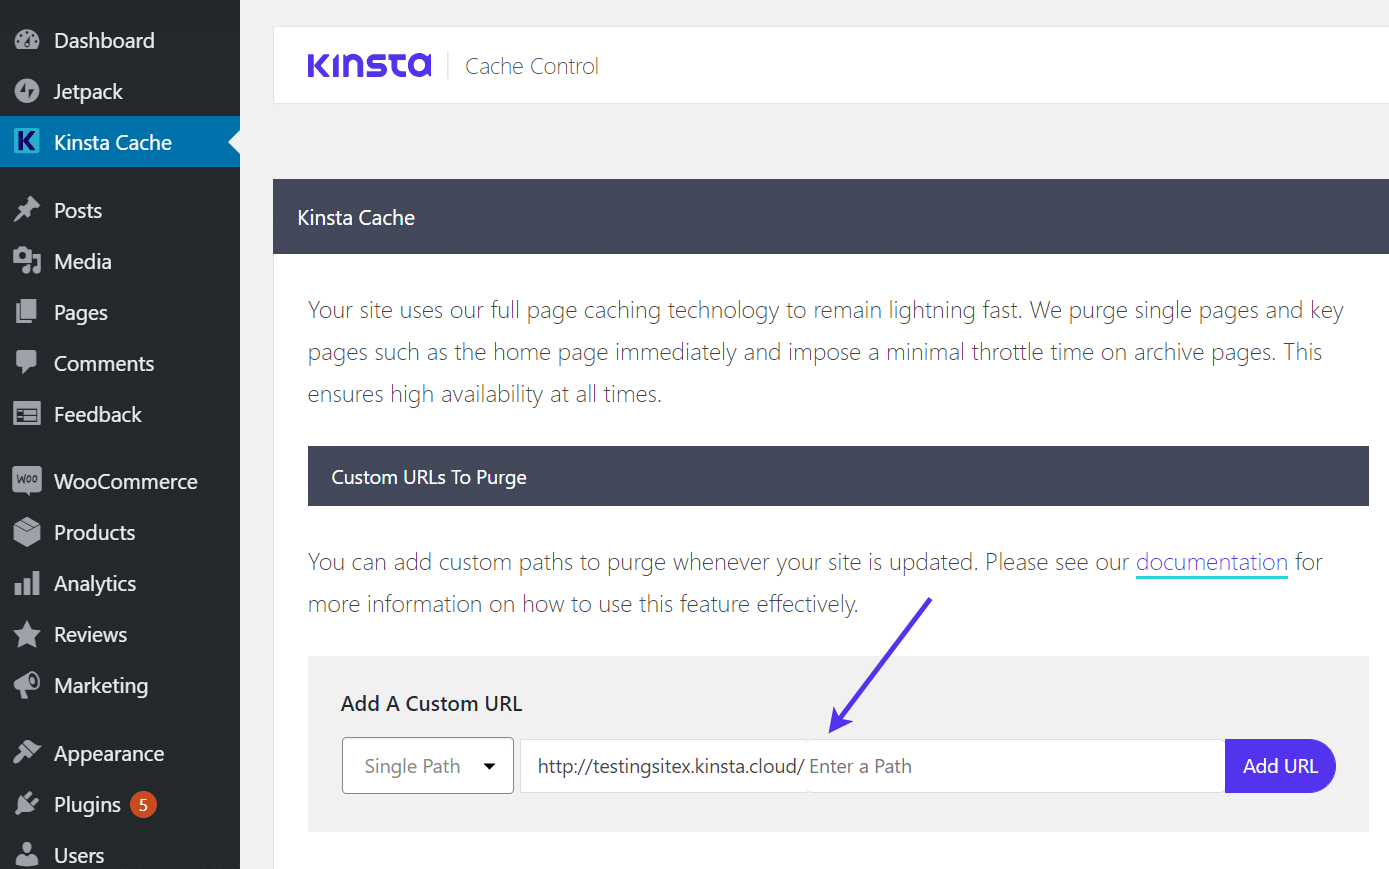 Adicionar uma URL personalizada" para purgar automaticamente o cache Kinsta